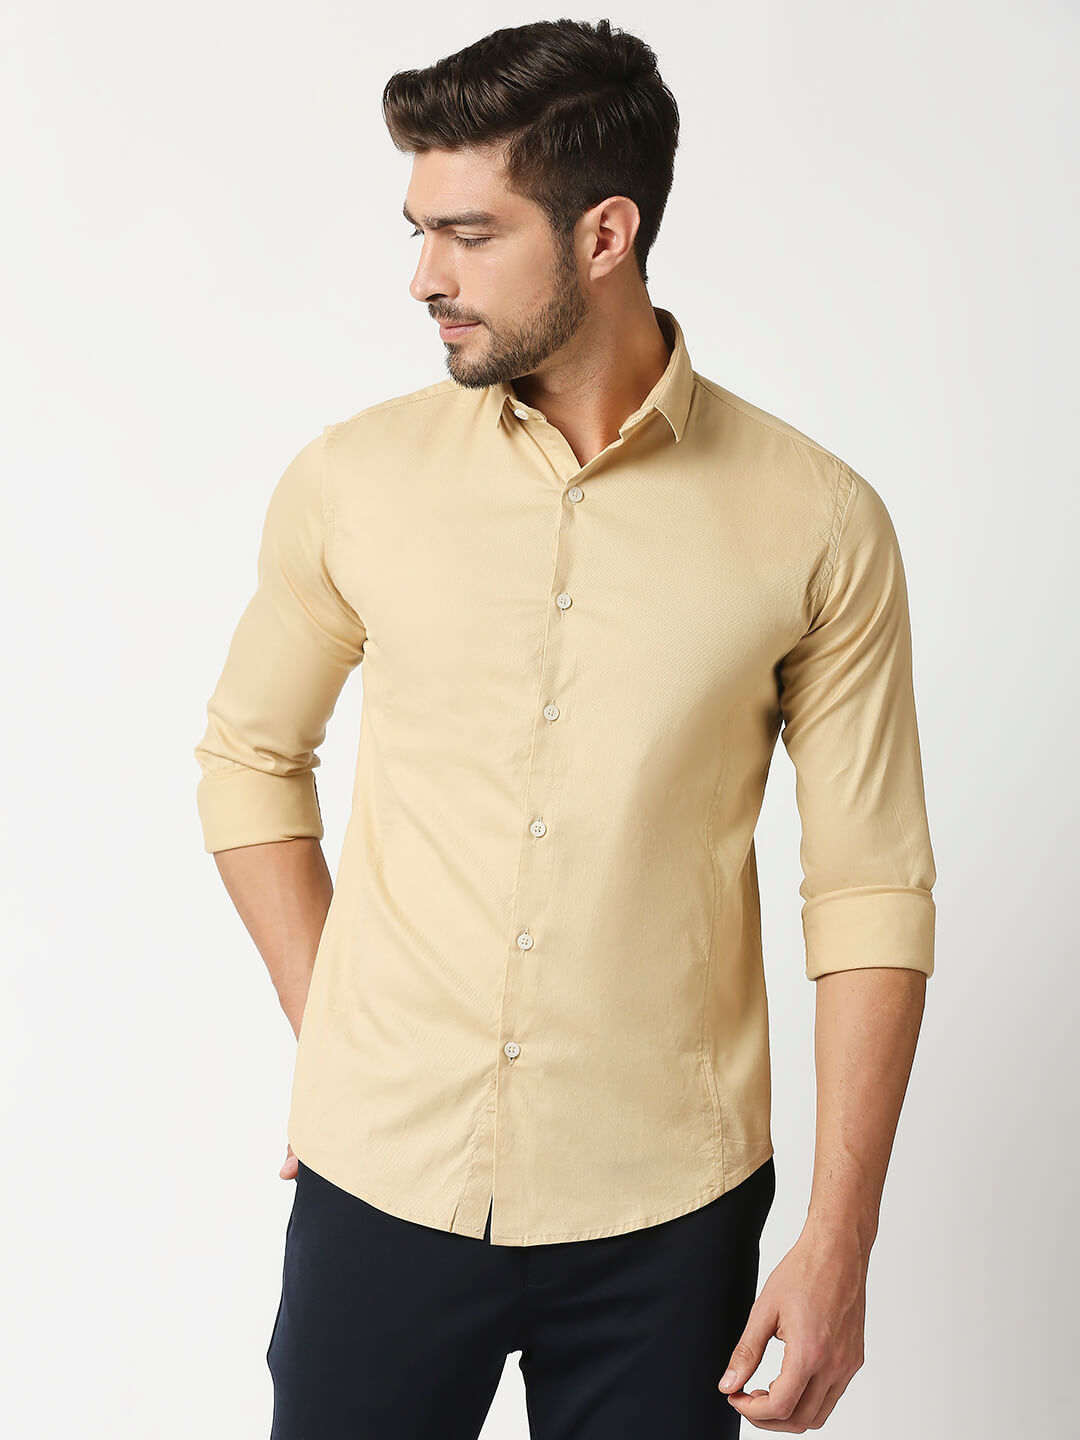 The Manaca Men Plain Shirt - Khaki